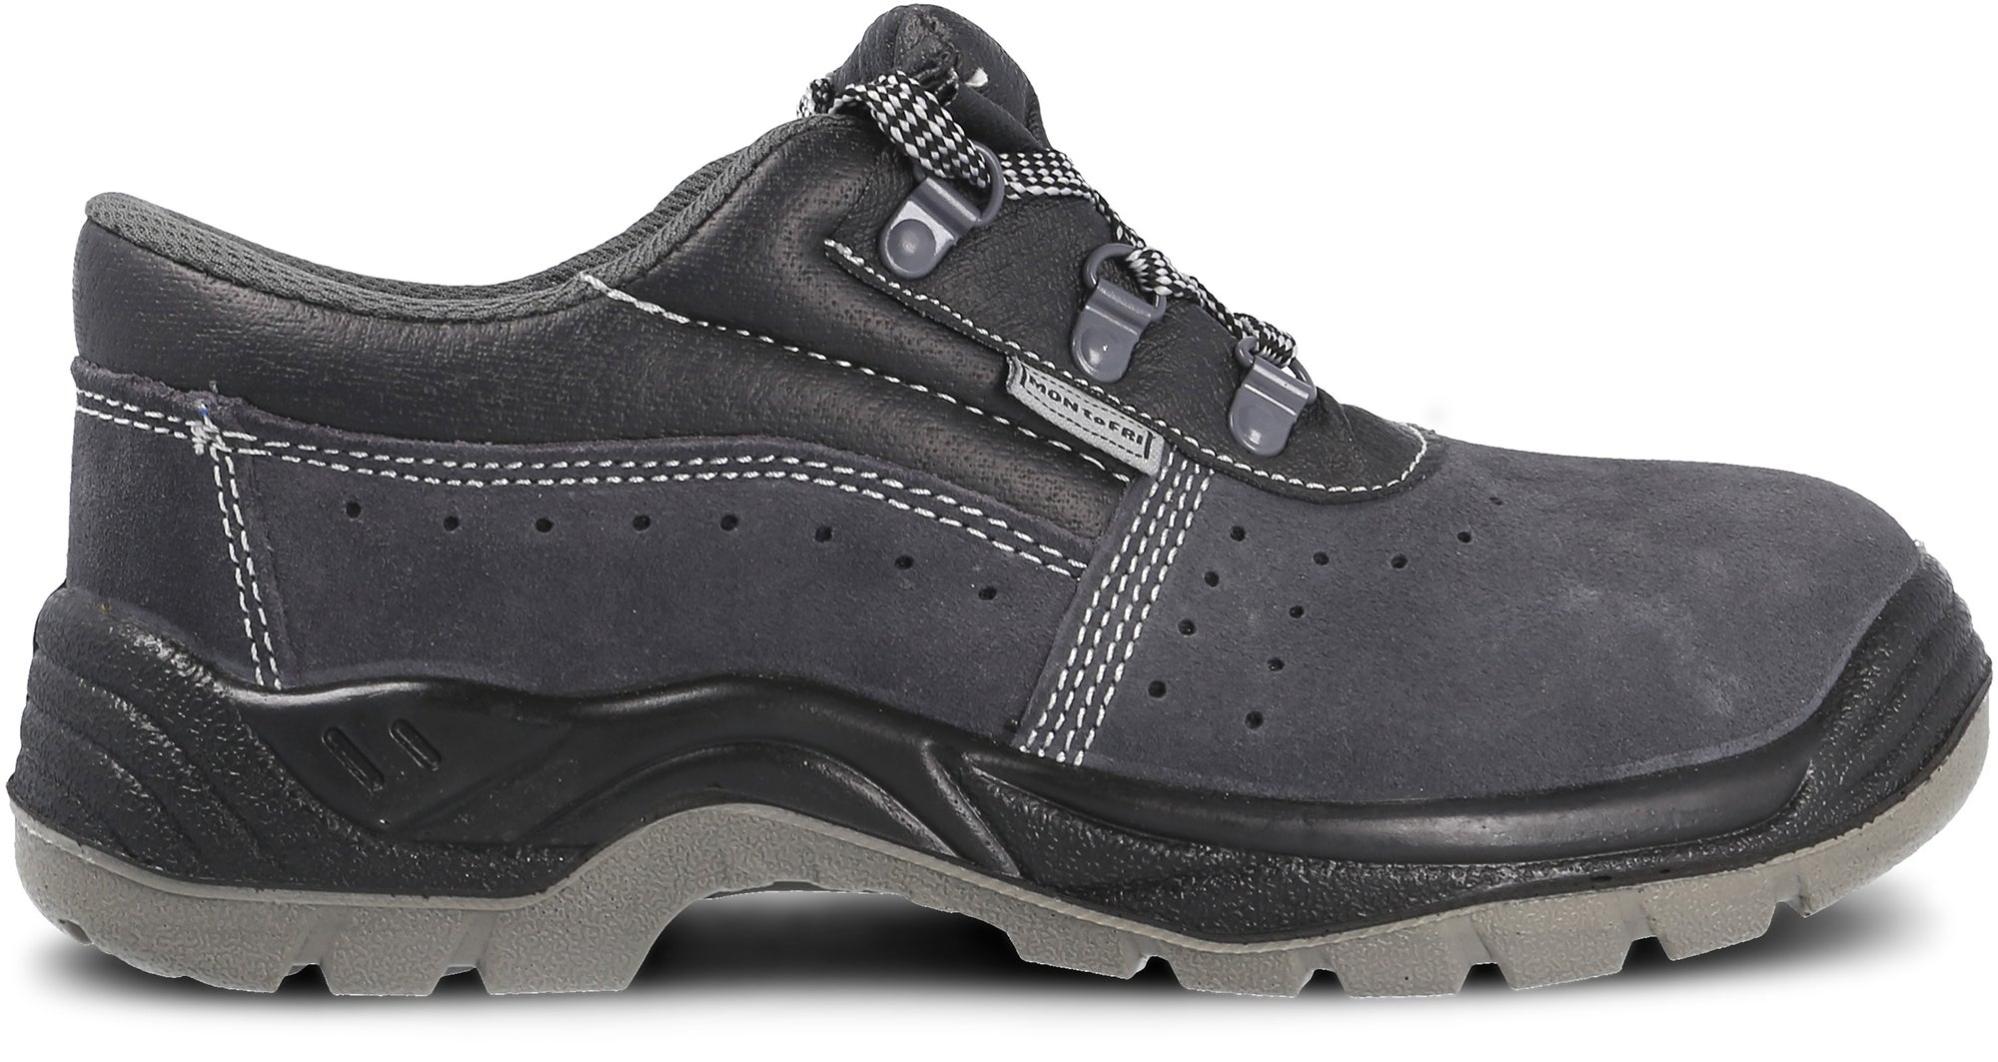 Zapato seguridad paredes, zp1002 serraje gris, s1p talla 40